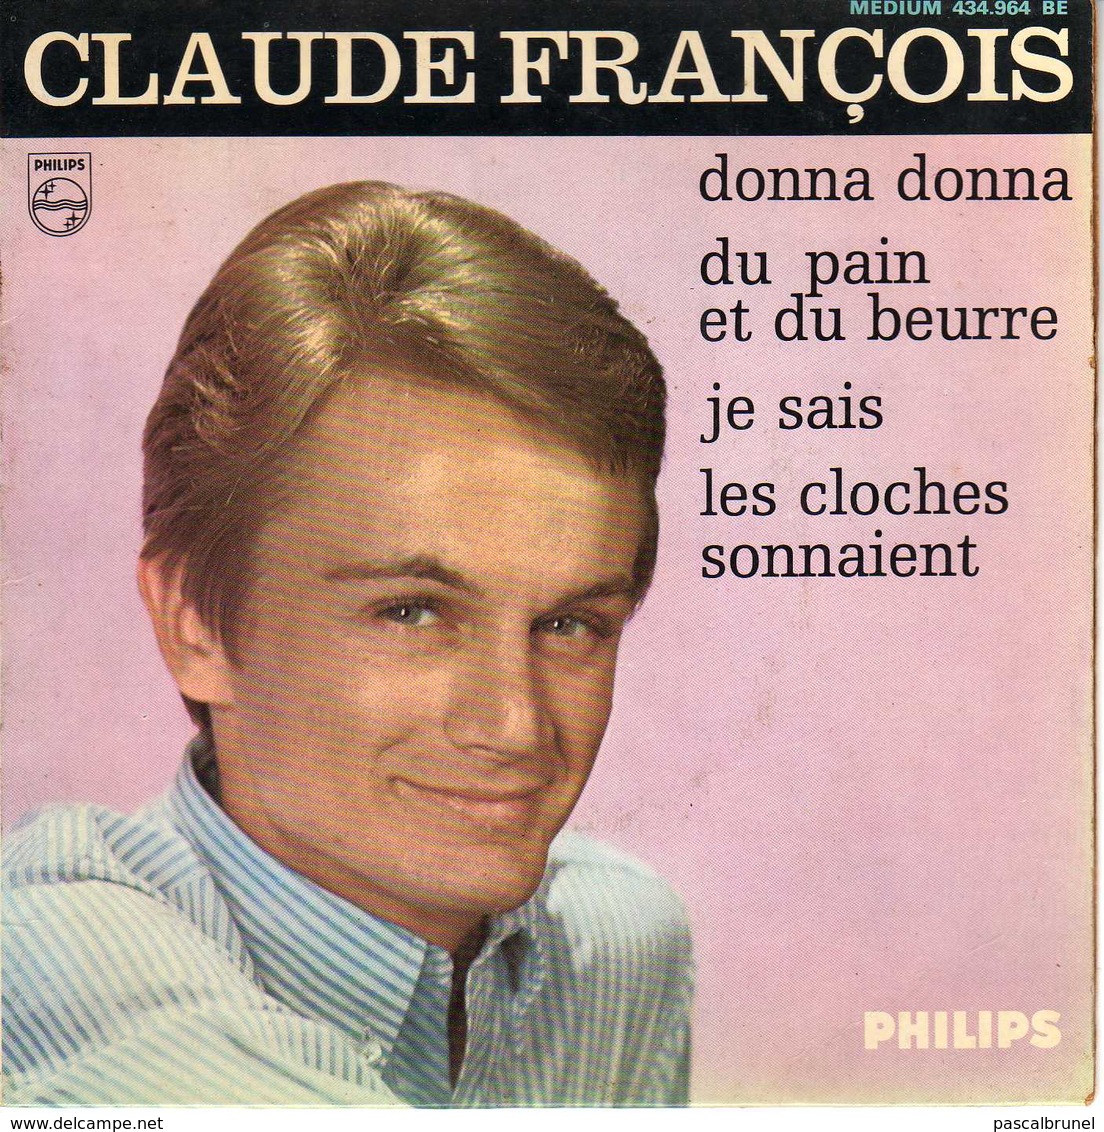 CLAUDE FRANCOIS - DONNA DONNA - Disco, Pop